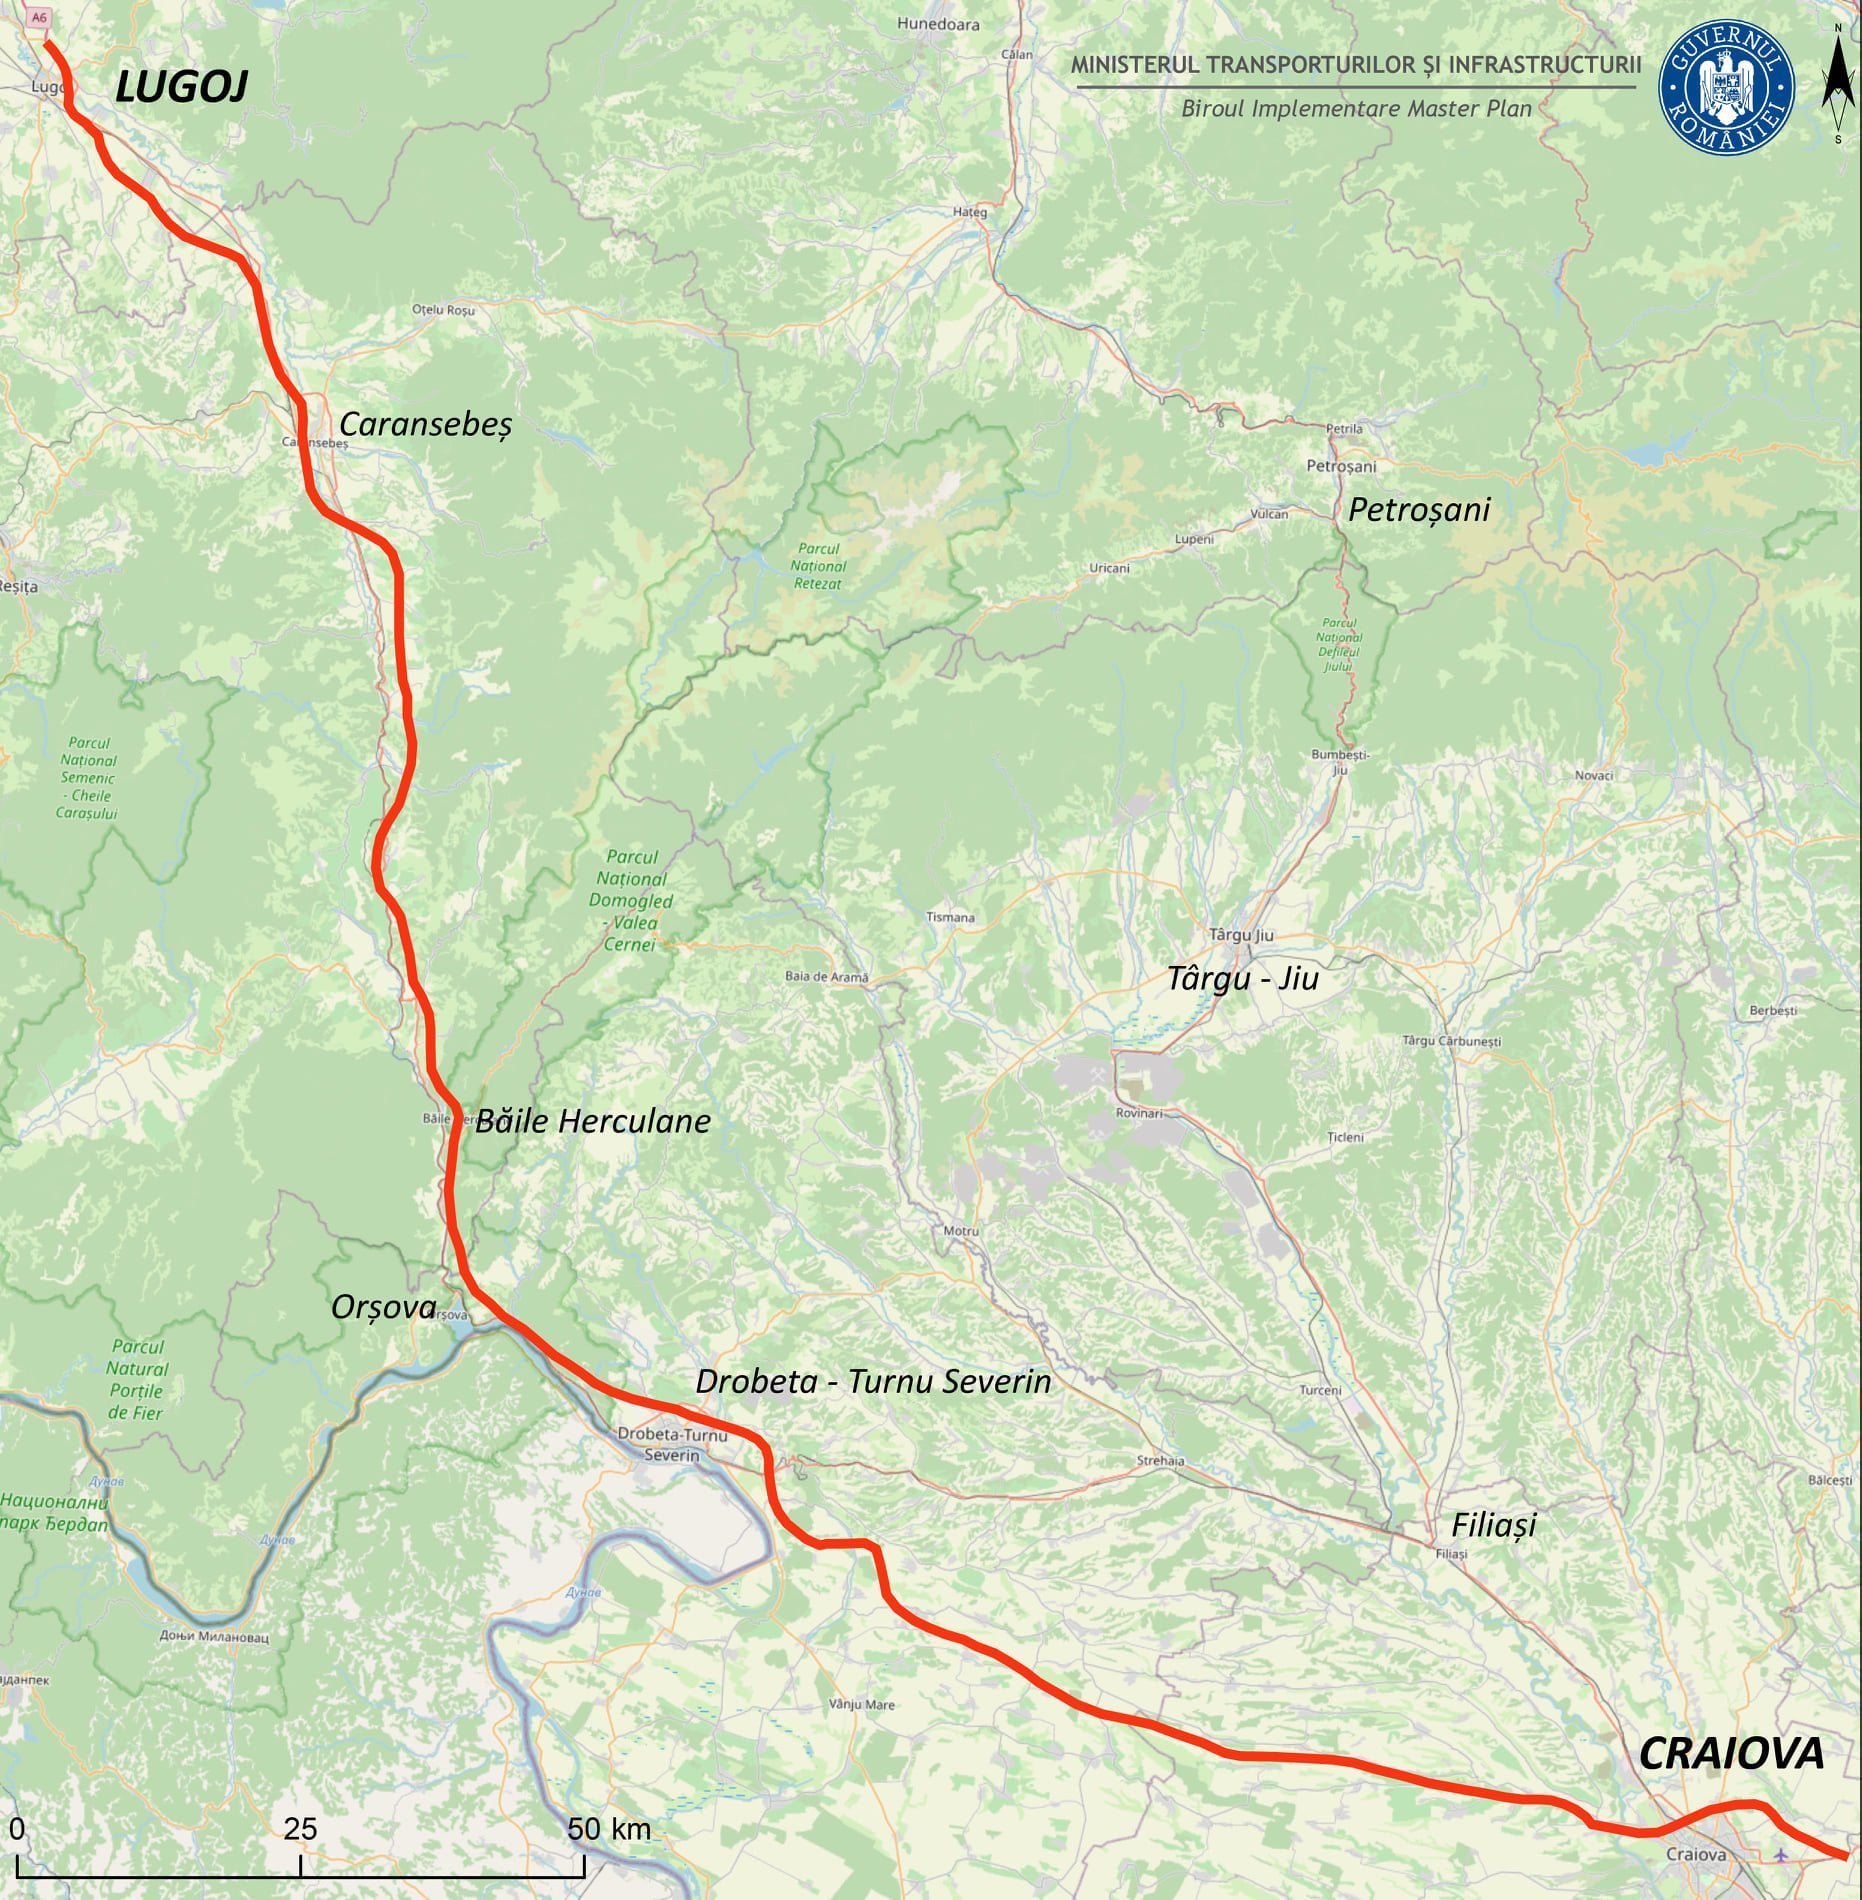 Cinci oferte depuse pentru proiectarea drumului de mare viteză Craiova-Lugoj